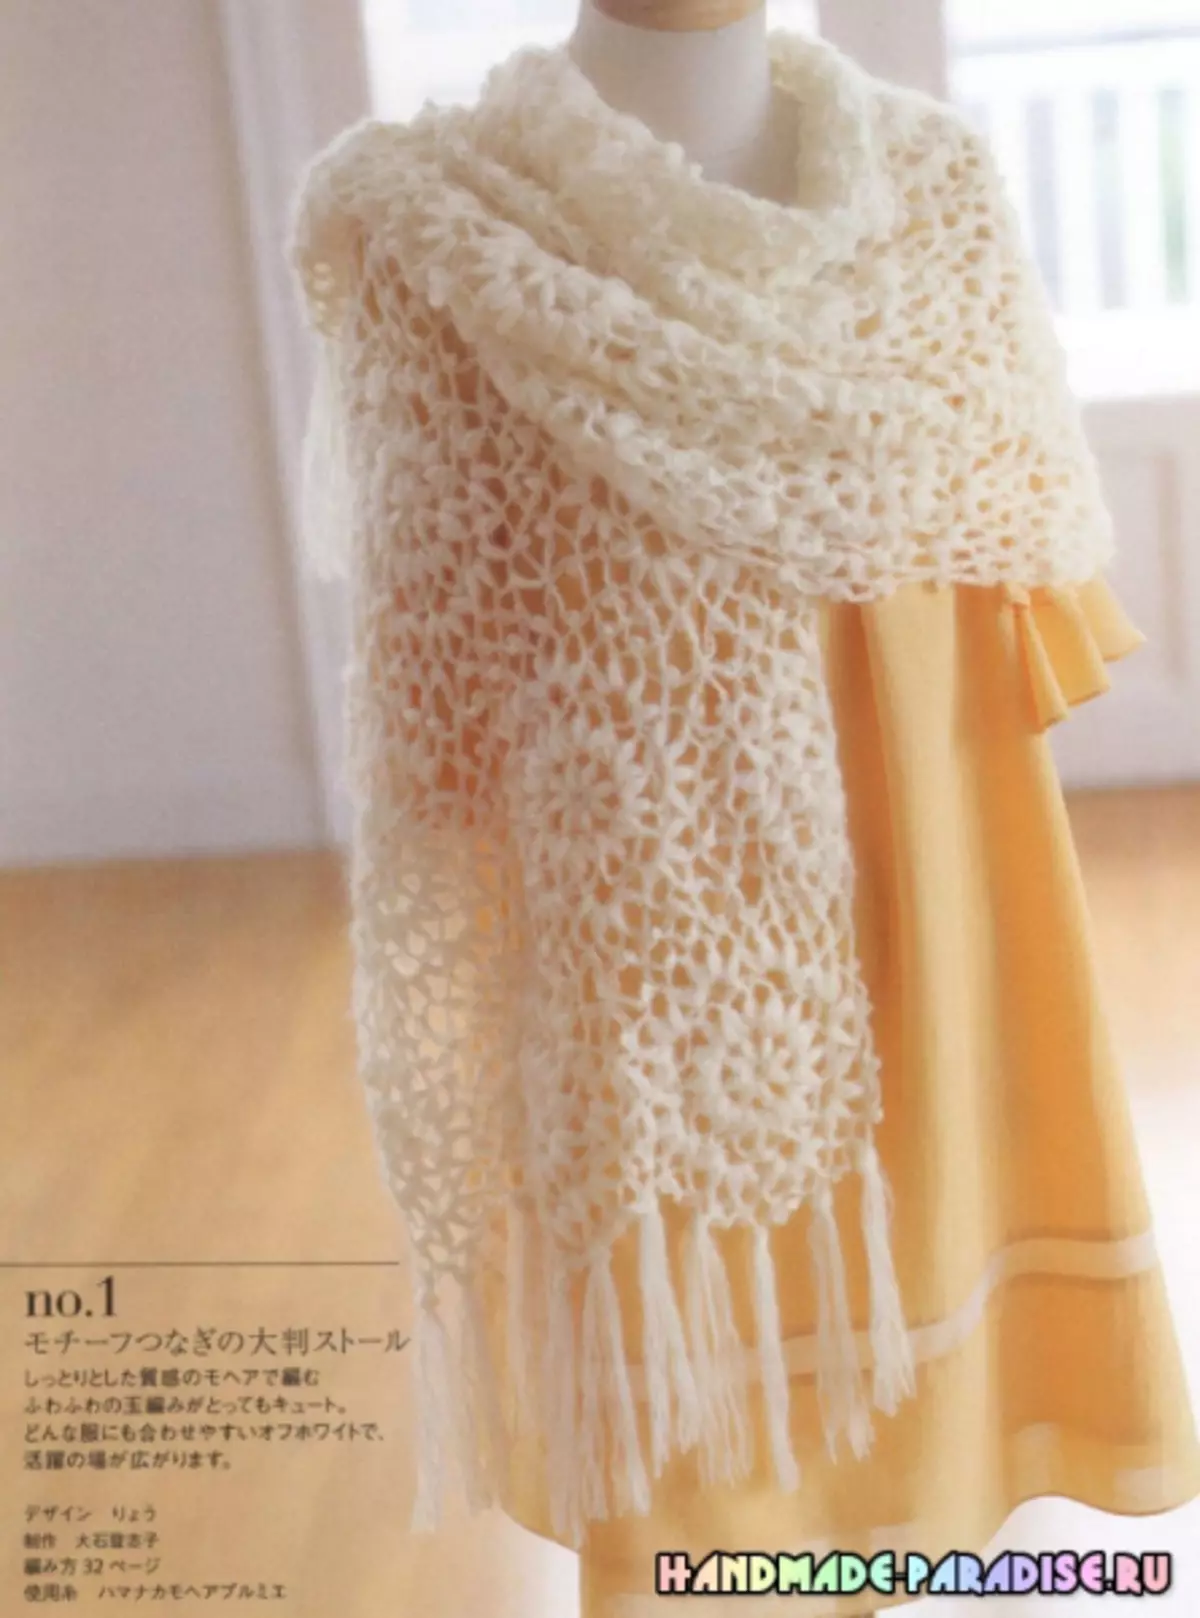 Ganxet de teixir elegant. Revista japonesa amb esquemes